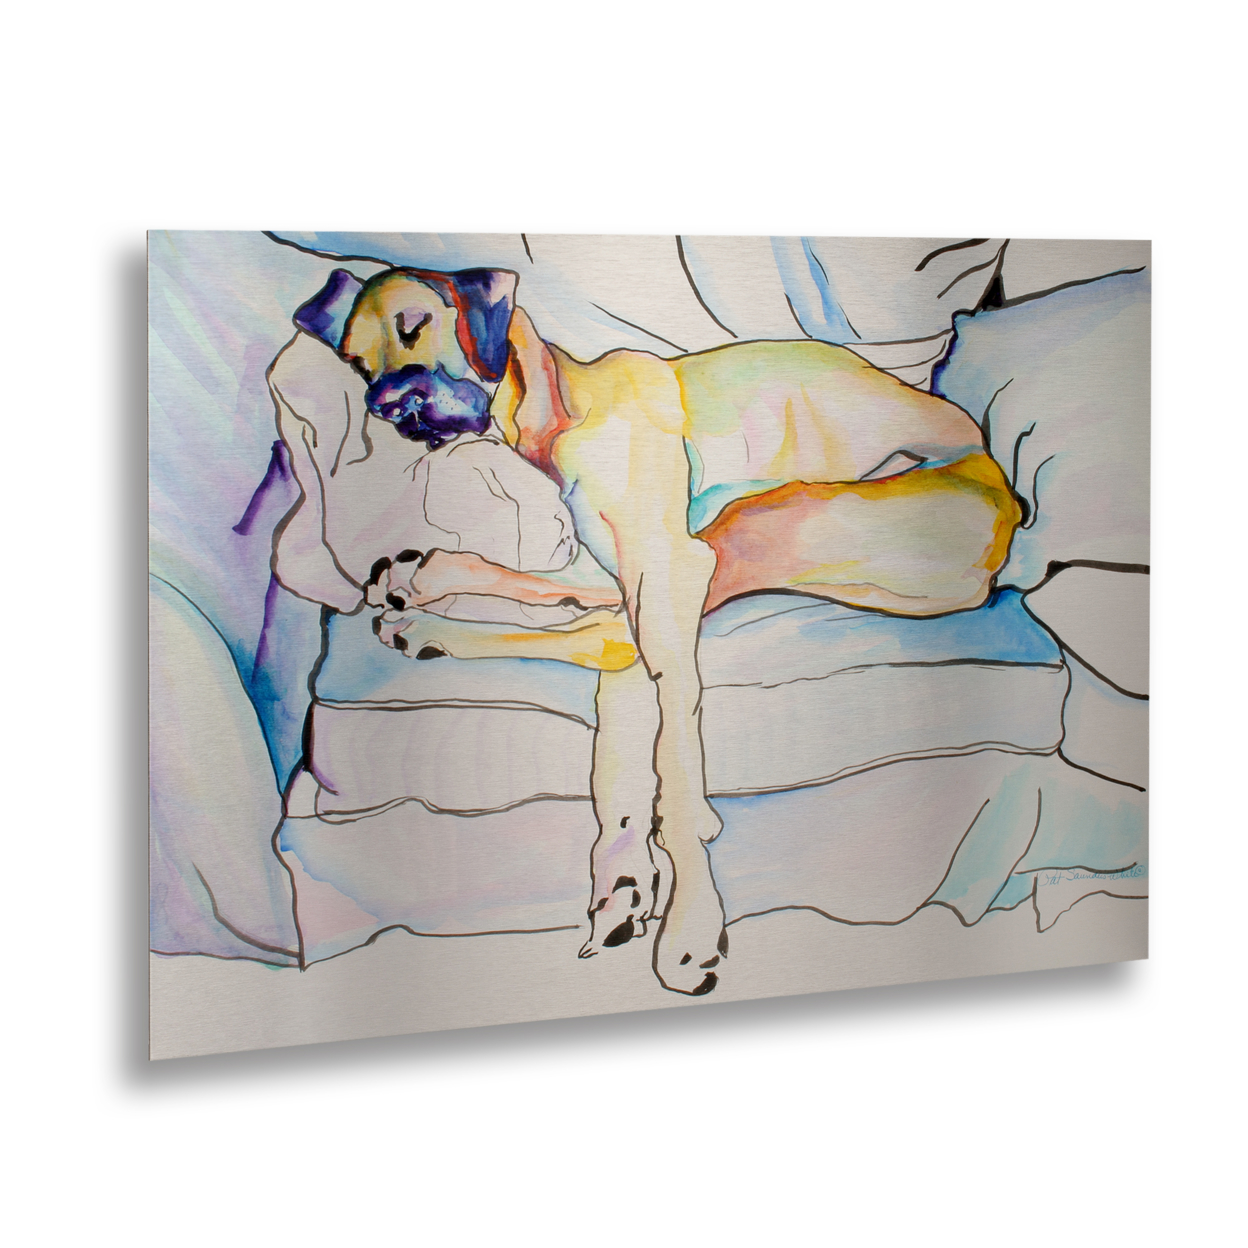 Pat Saunders-White 'Sleeping Beauty' Floating Brushed Aluminum Art 16 X 22